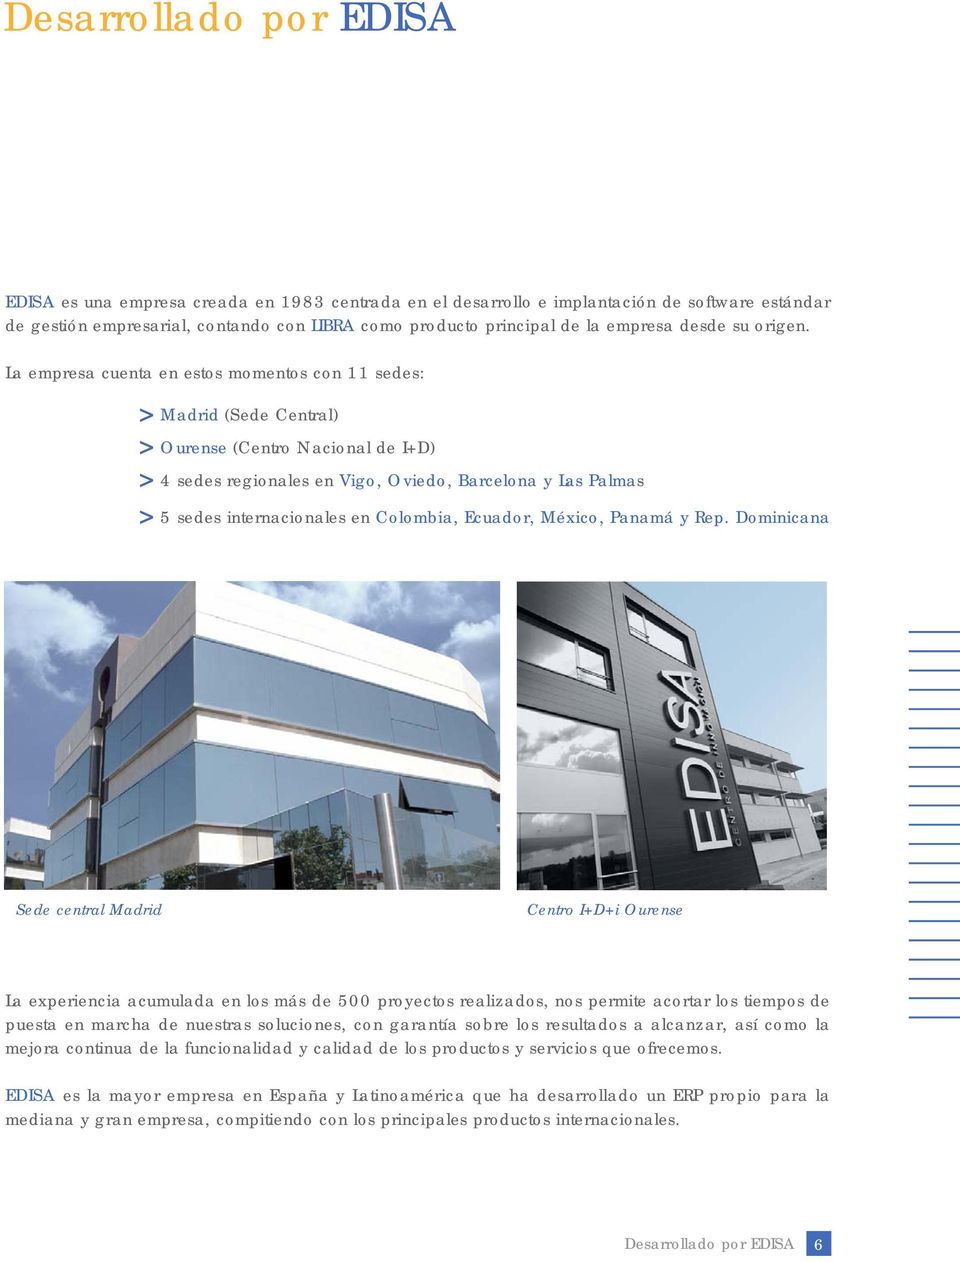 La empresa cuenta en estos momentos con 11 sedes: Madrid (Sede Central) Ourense (Centro Nacional de I+D) 4 sedes regionales en Vigo, Oviedo, Barcelona y Las Palmas 5 sedes internacionales en